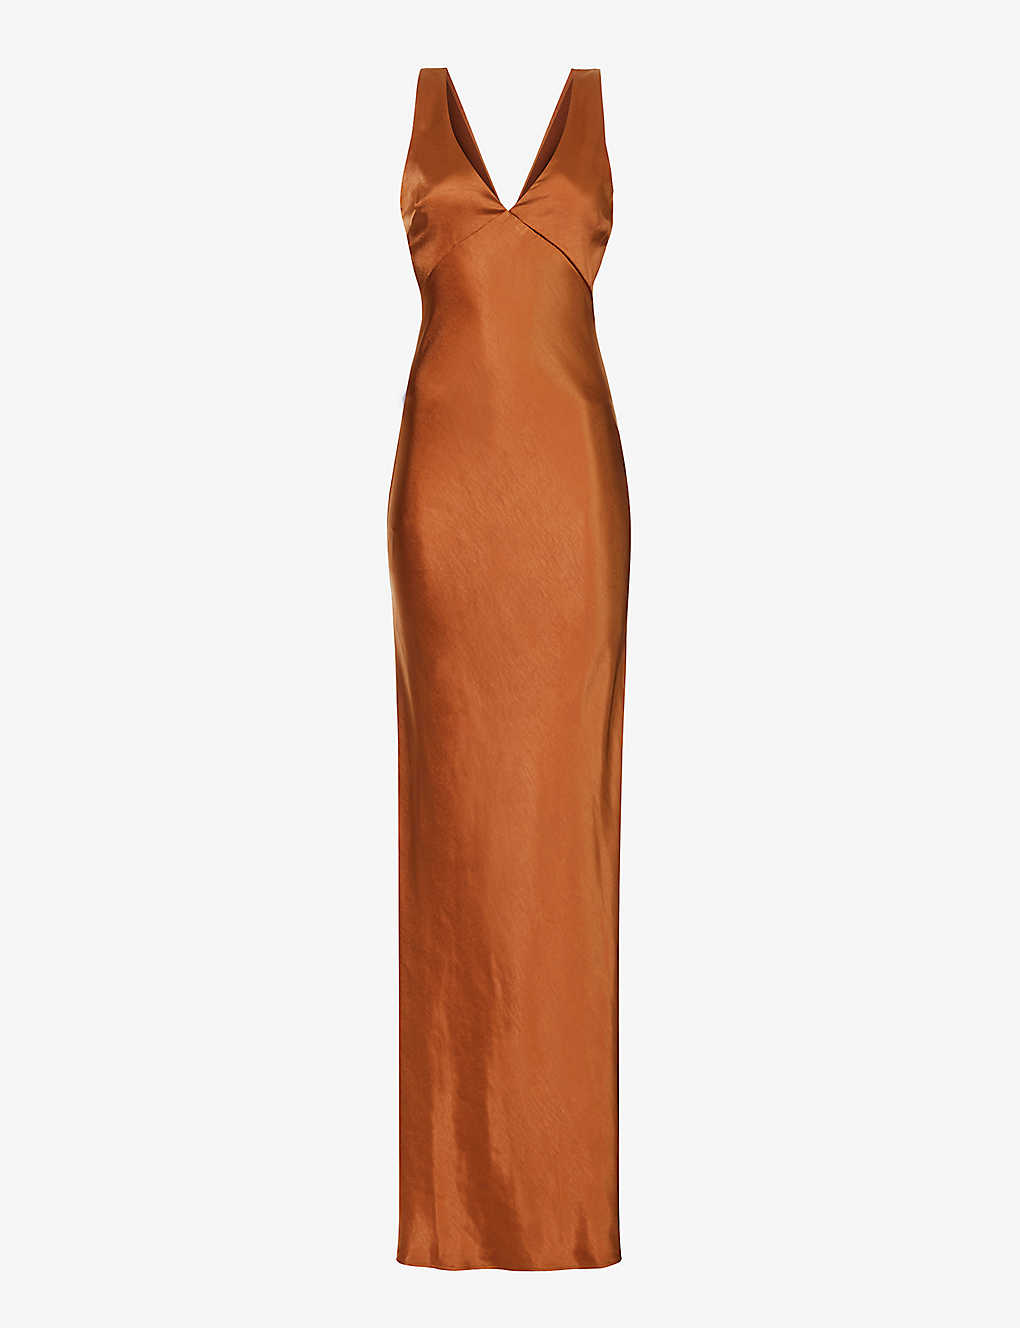 Six Stories Womens Rust Sleeveless Cut-out Woven Maxi Dress